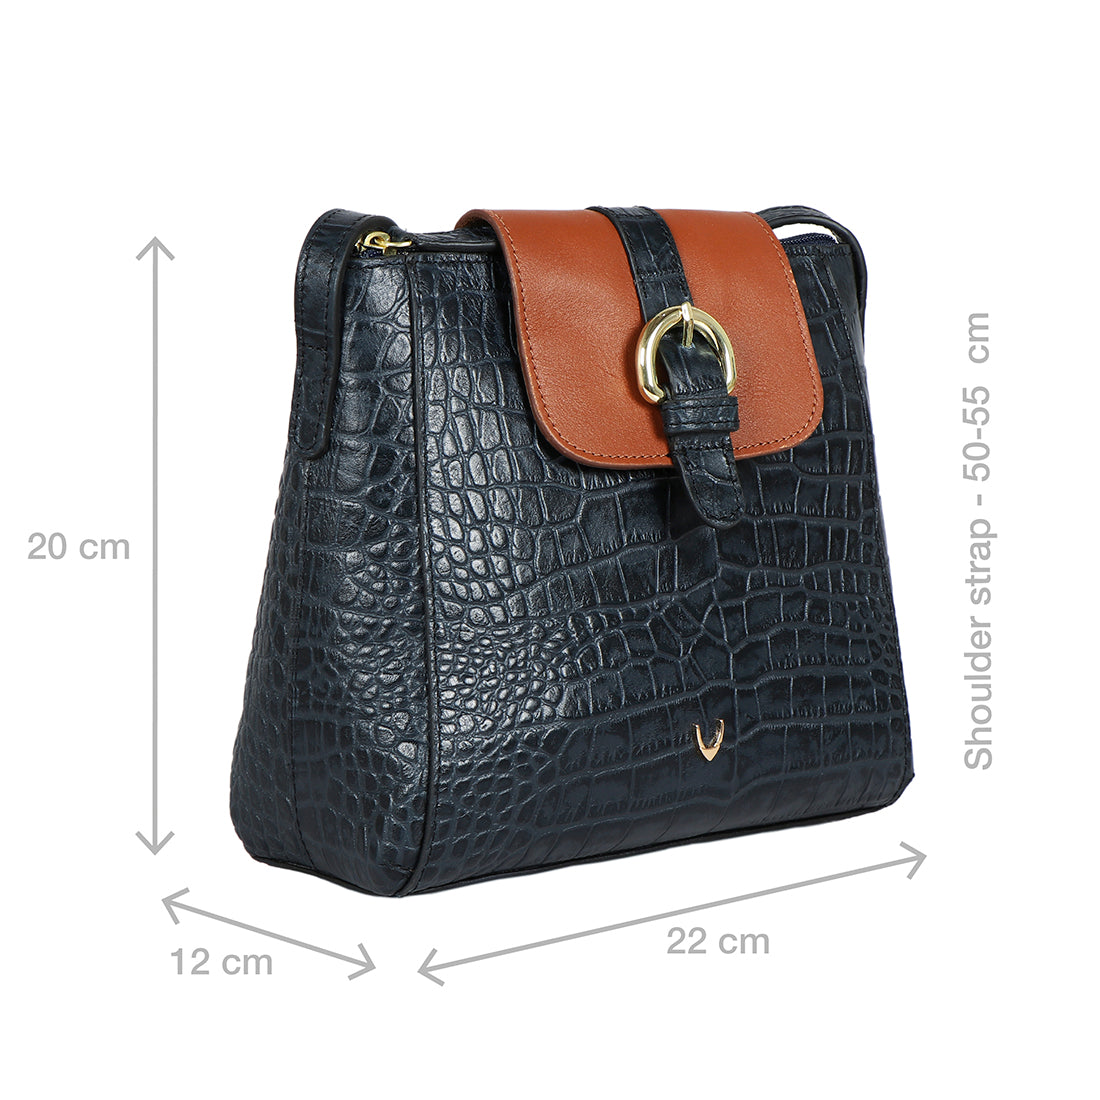 Hidesign Ee Taurus 03 Women Mini Sling Bags: Buy Hidesign Ee Taurus 03  Women Mini Sling Bags Online at Best Price in India